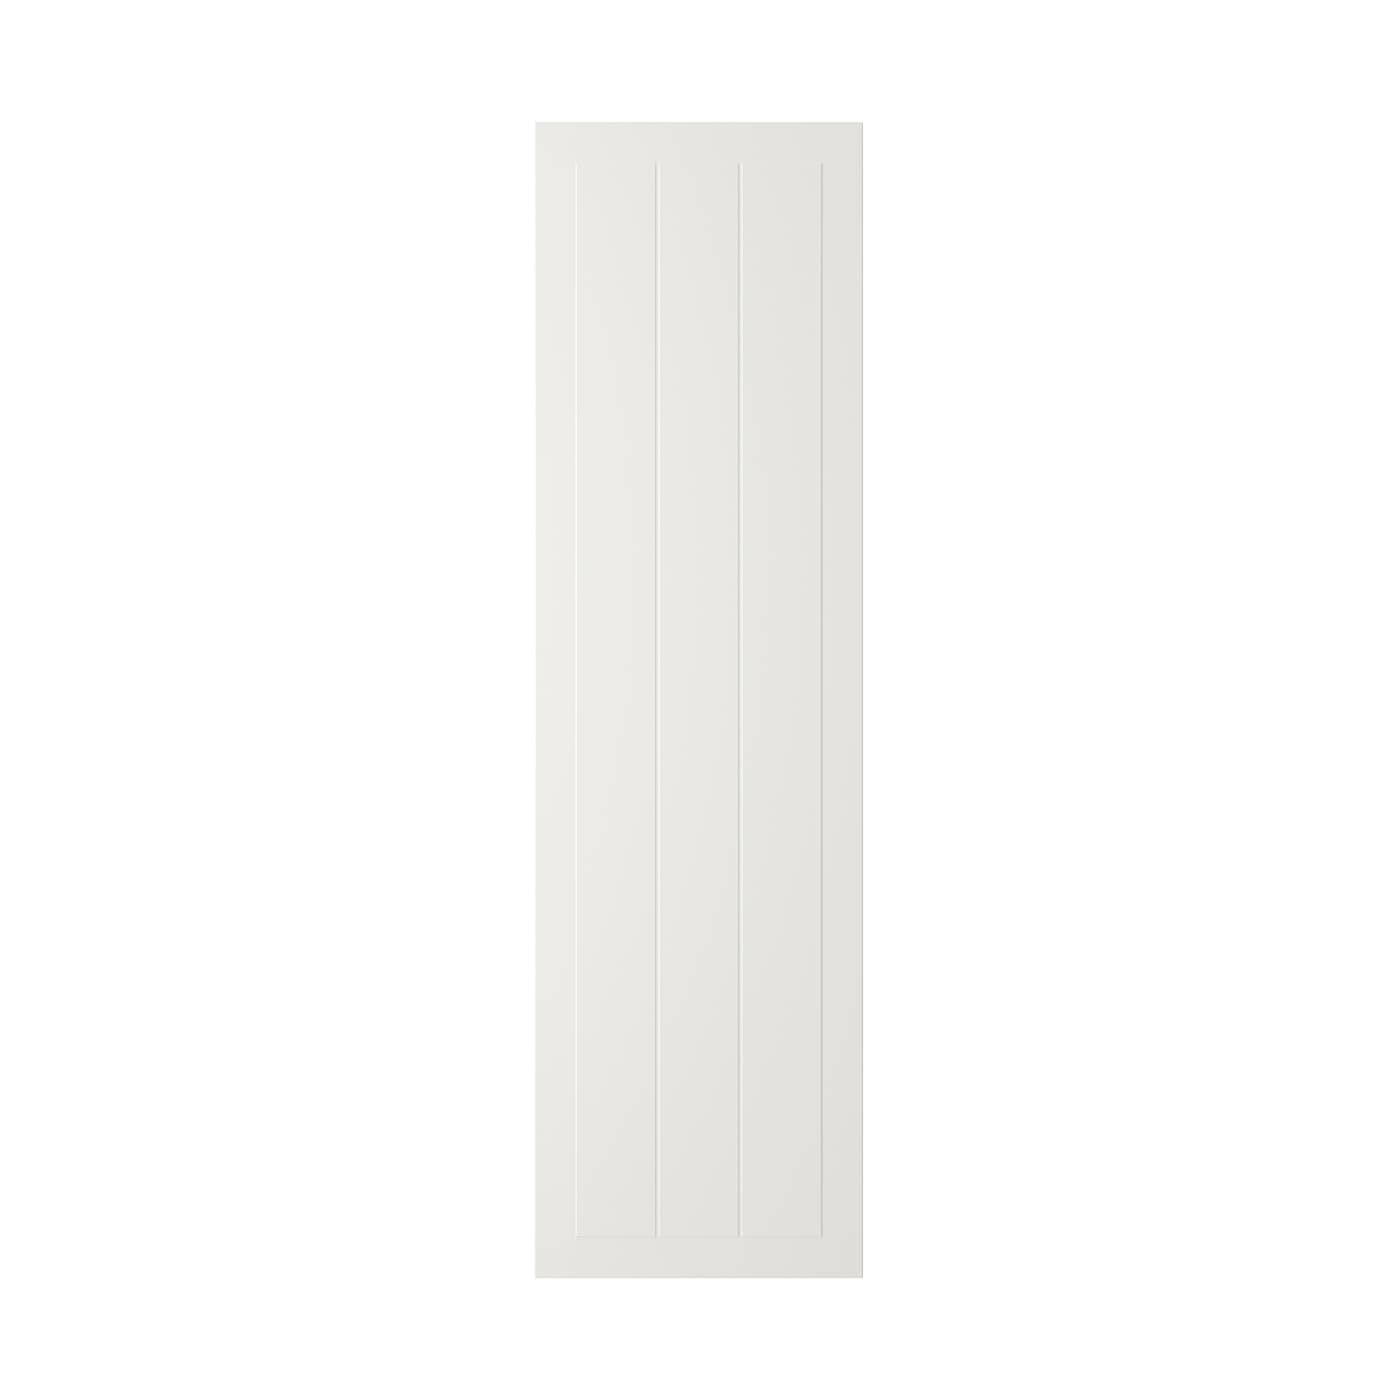 Фасад - IKEA STENSUND, 140х40 см, белый, СТЕНСУНД ИКЕА